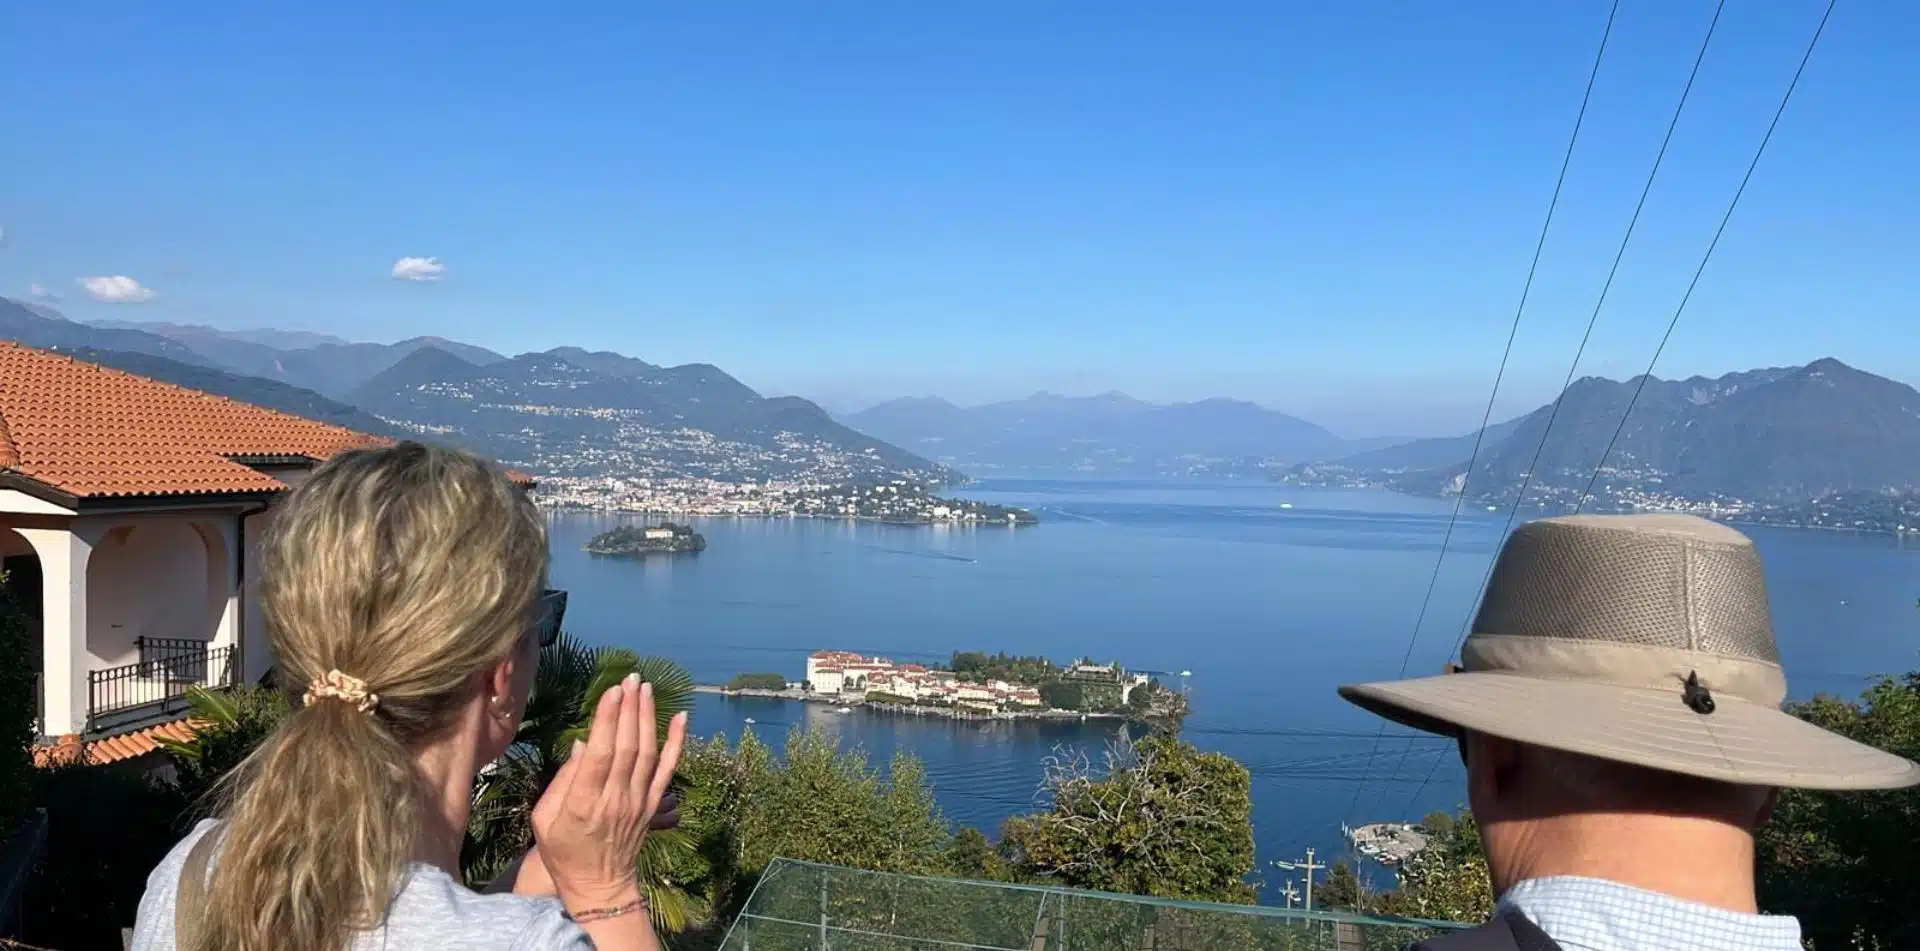 Views from Stresa on the Italian Lakes tour